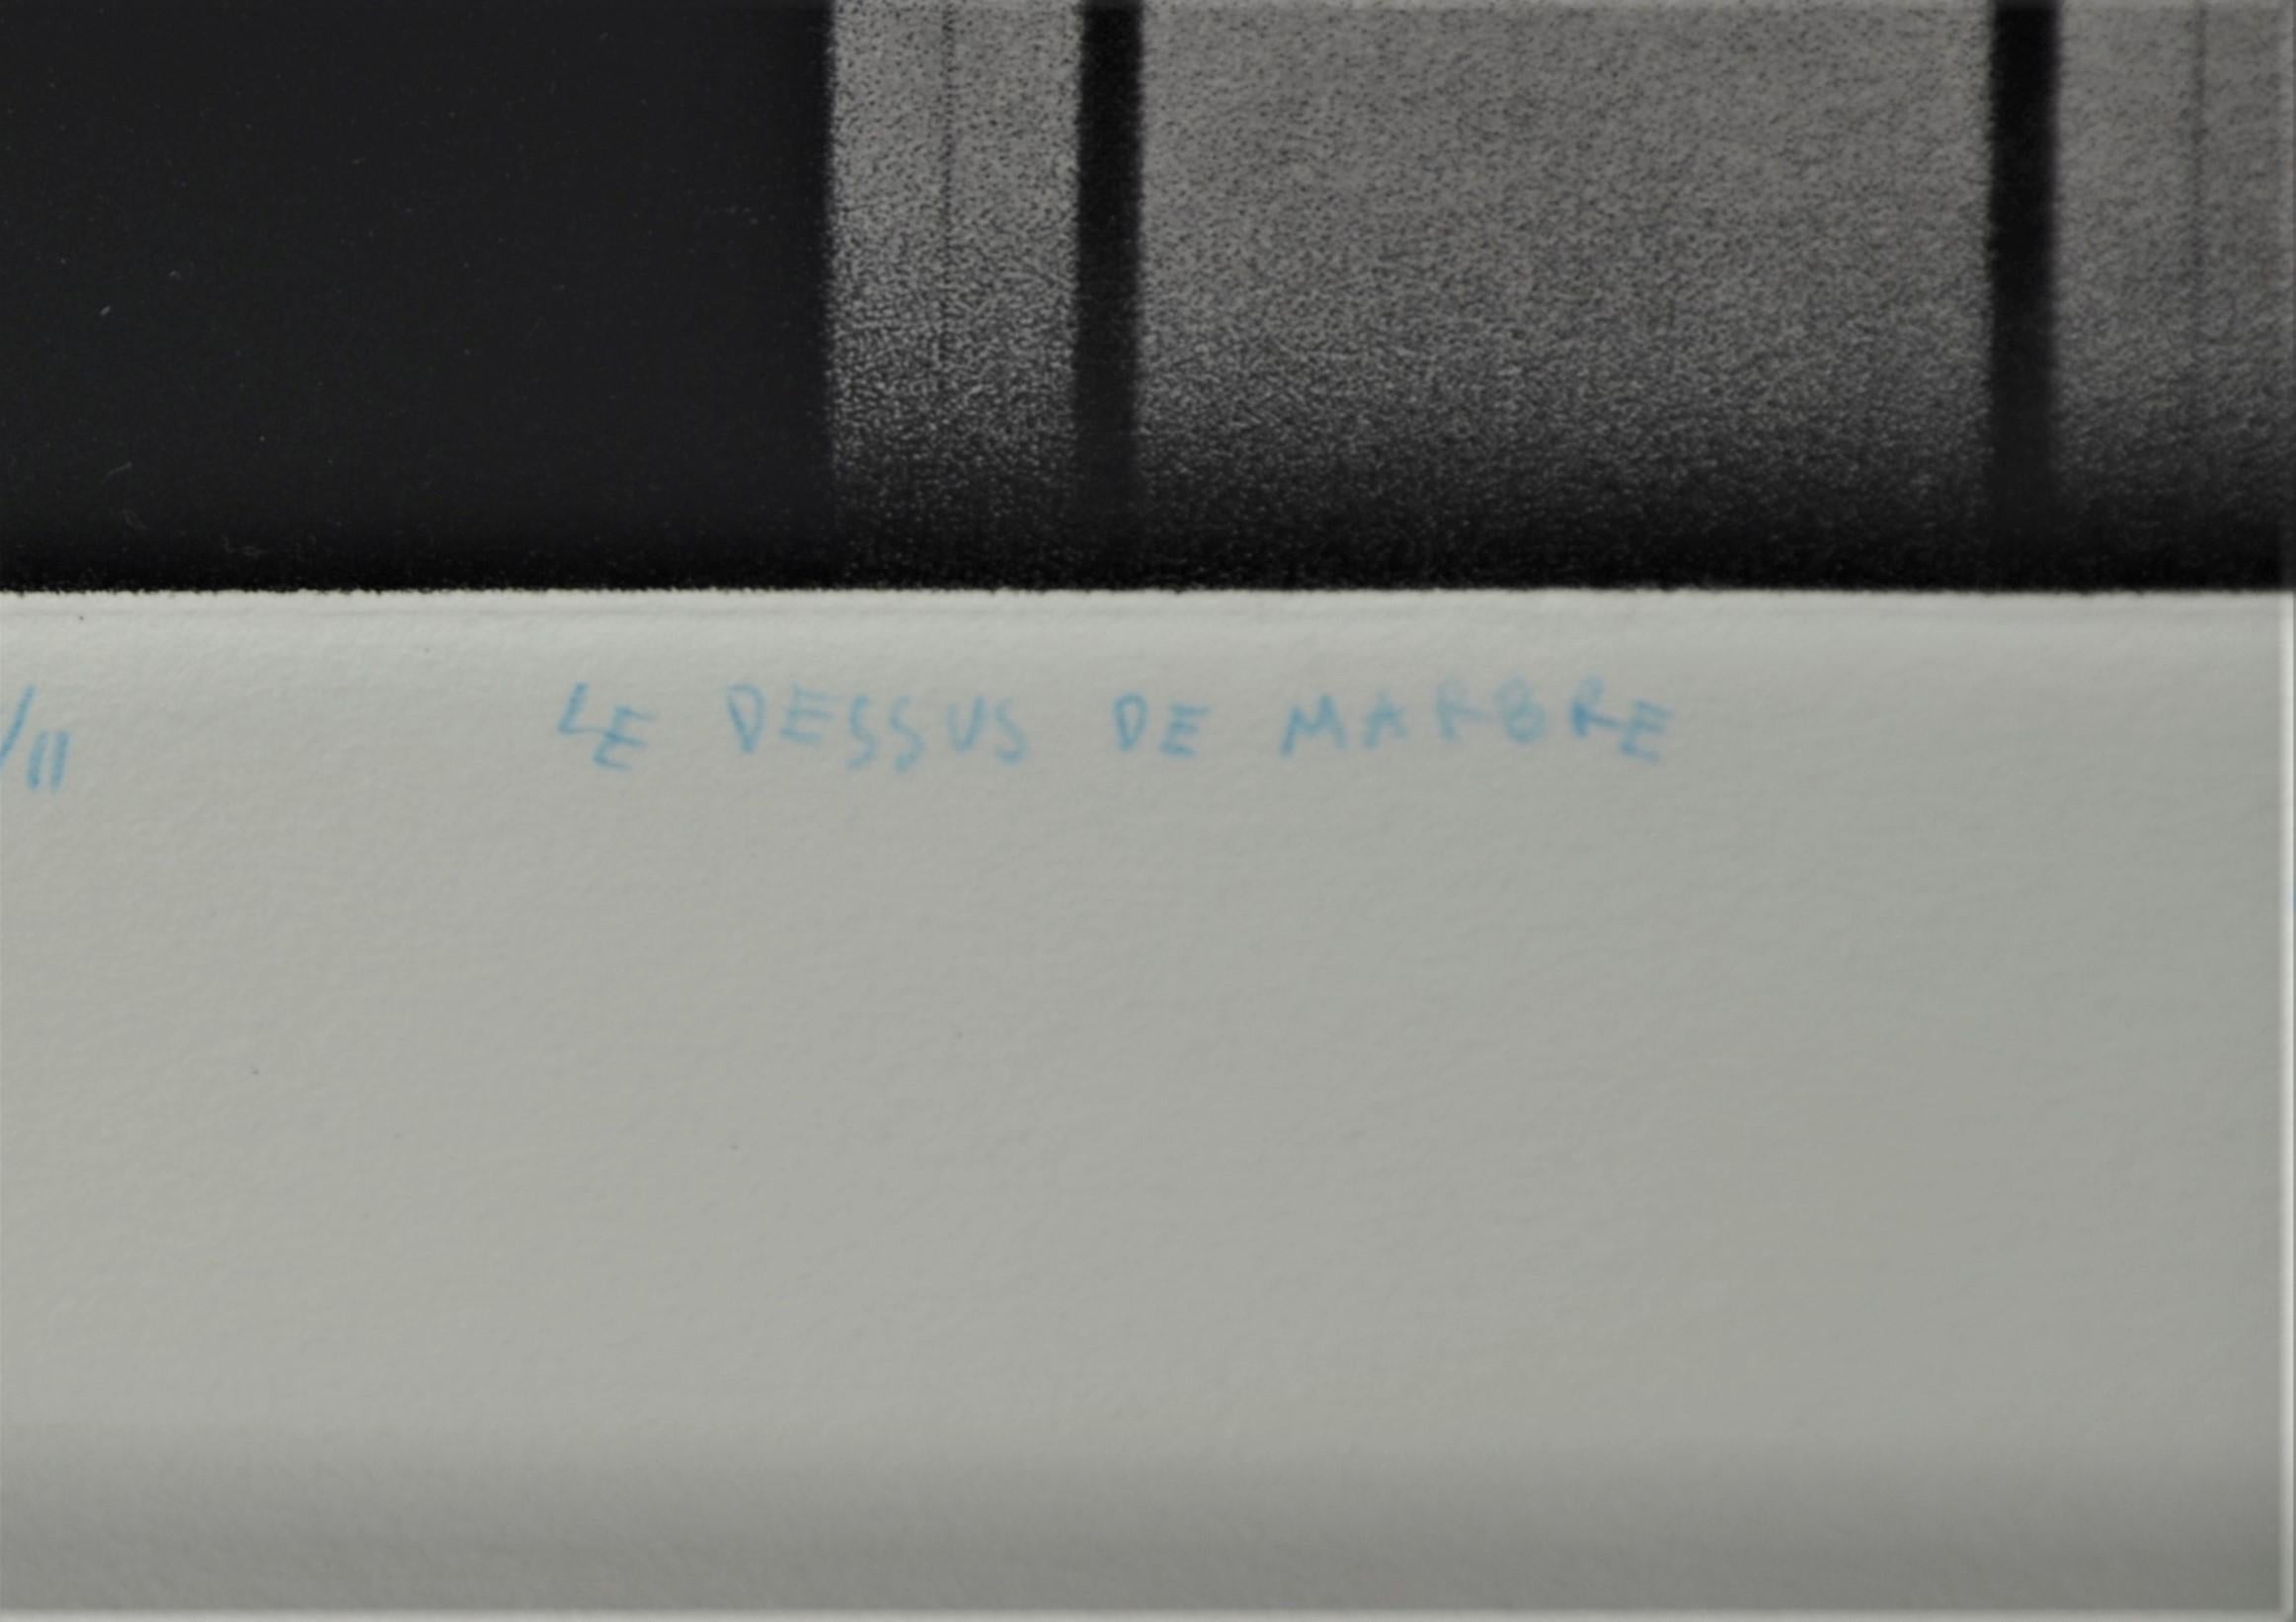 Black, Pink & White Signed No'd Mario Avanti Mezzotint 2/11, Le Dessus de Marbre For Sale 6